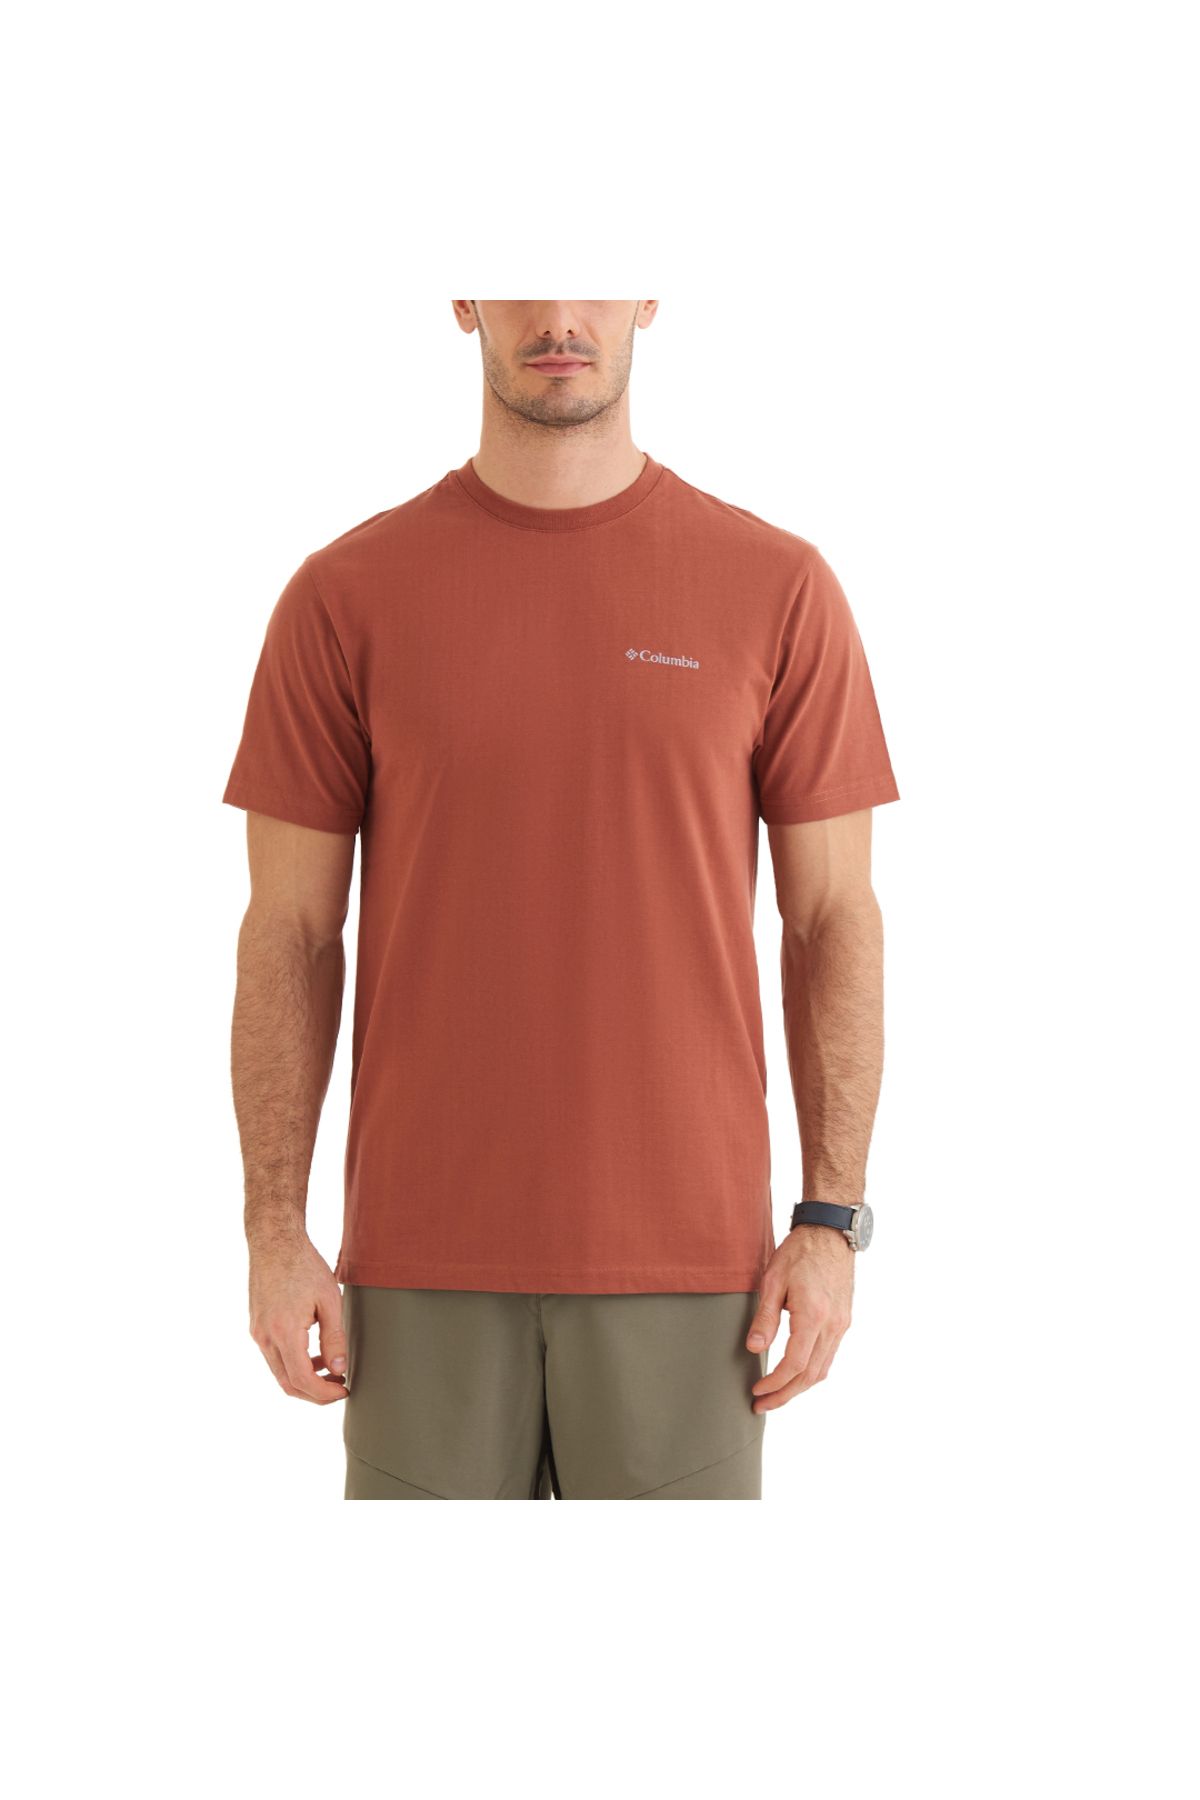 Columbia CSC Basic SLogo Brushed Erkek Kısa Kollu T-Shirt